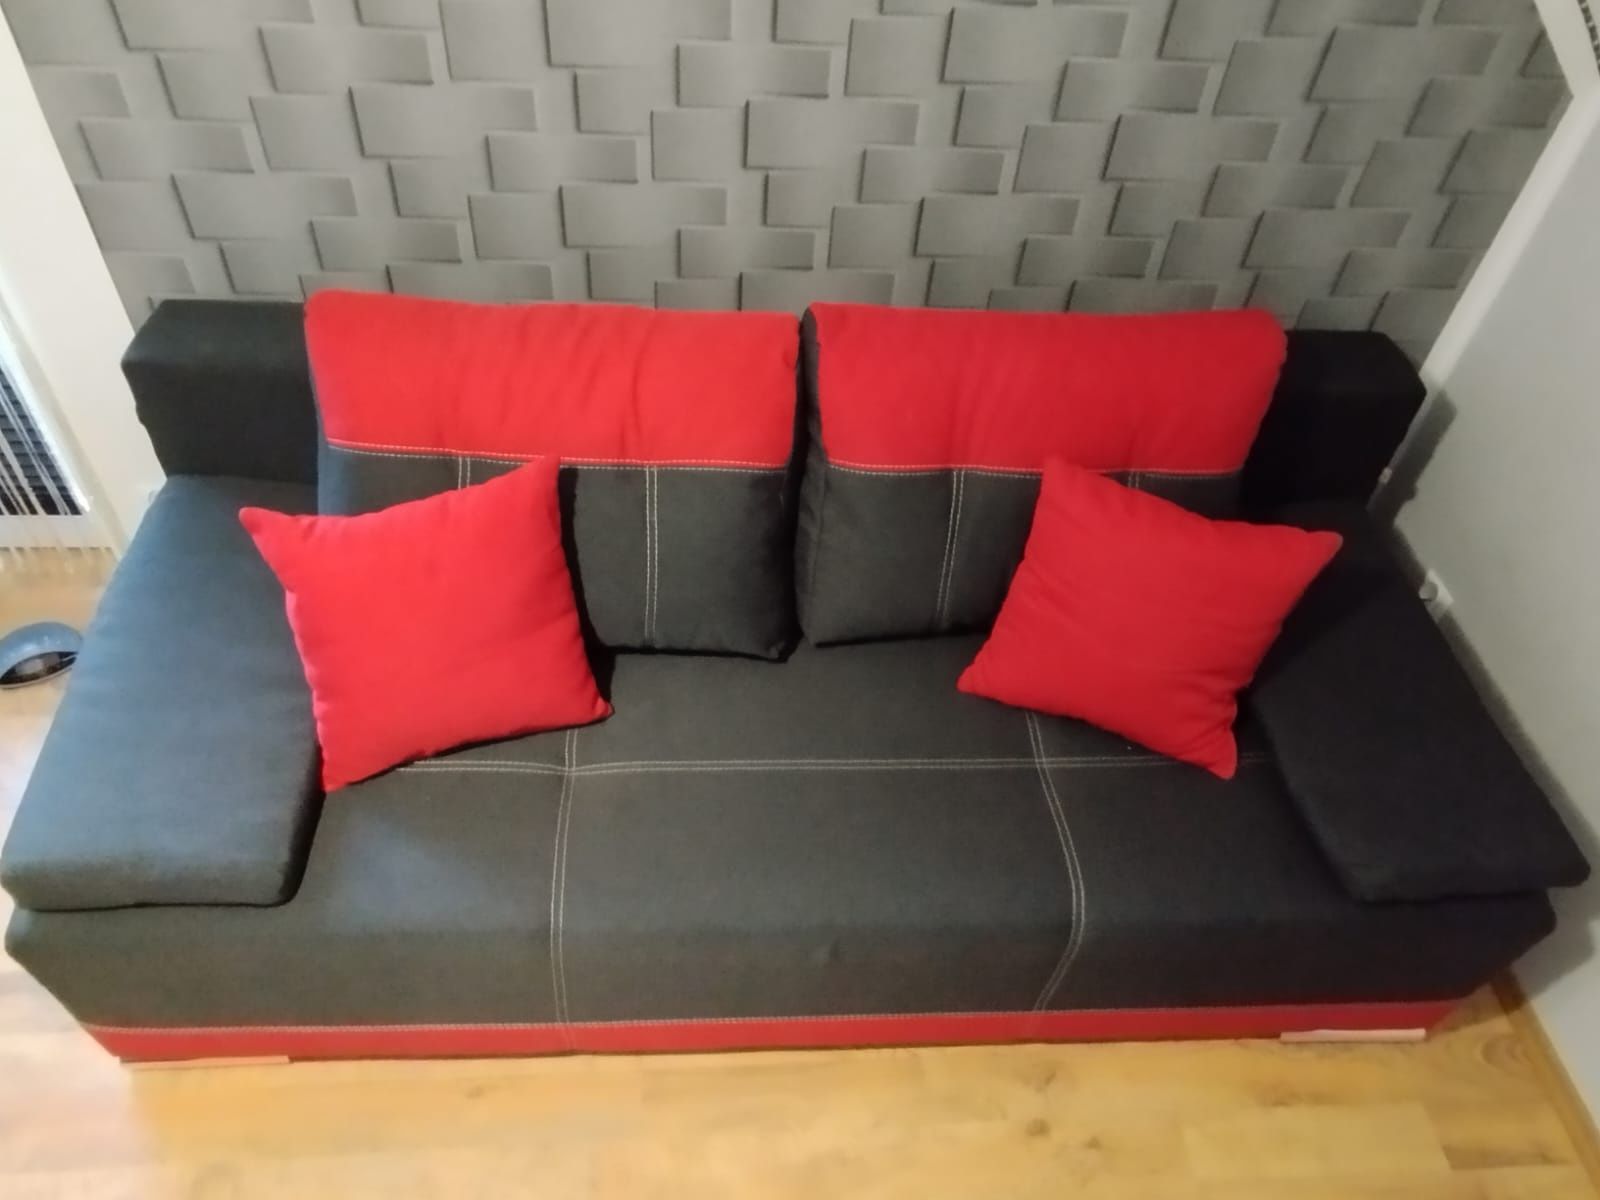 Kanapa czerwono-czarna z białymi paskami (łóżko, kanapa, sofa, wersalk